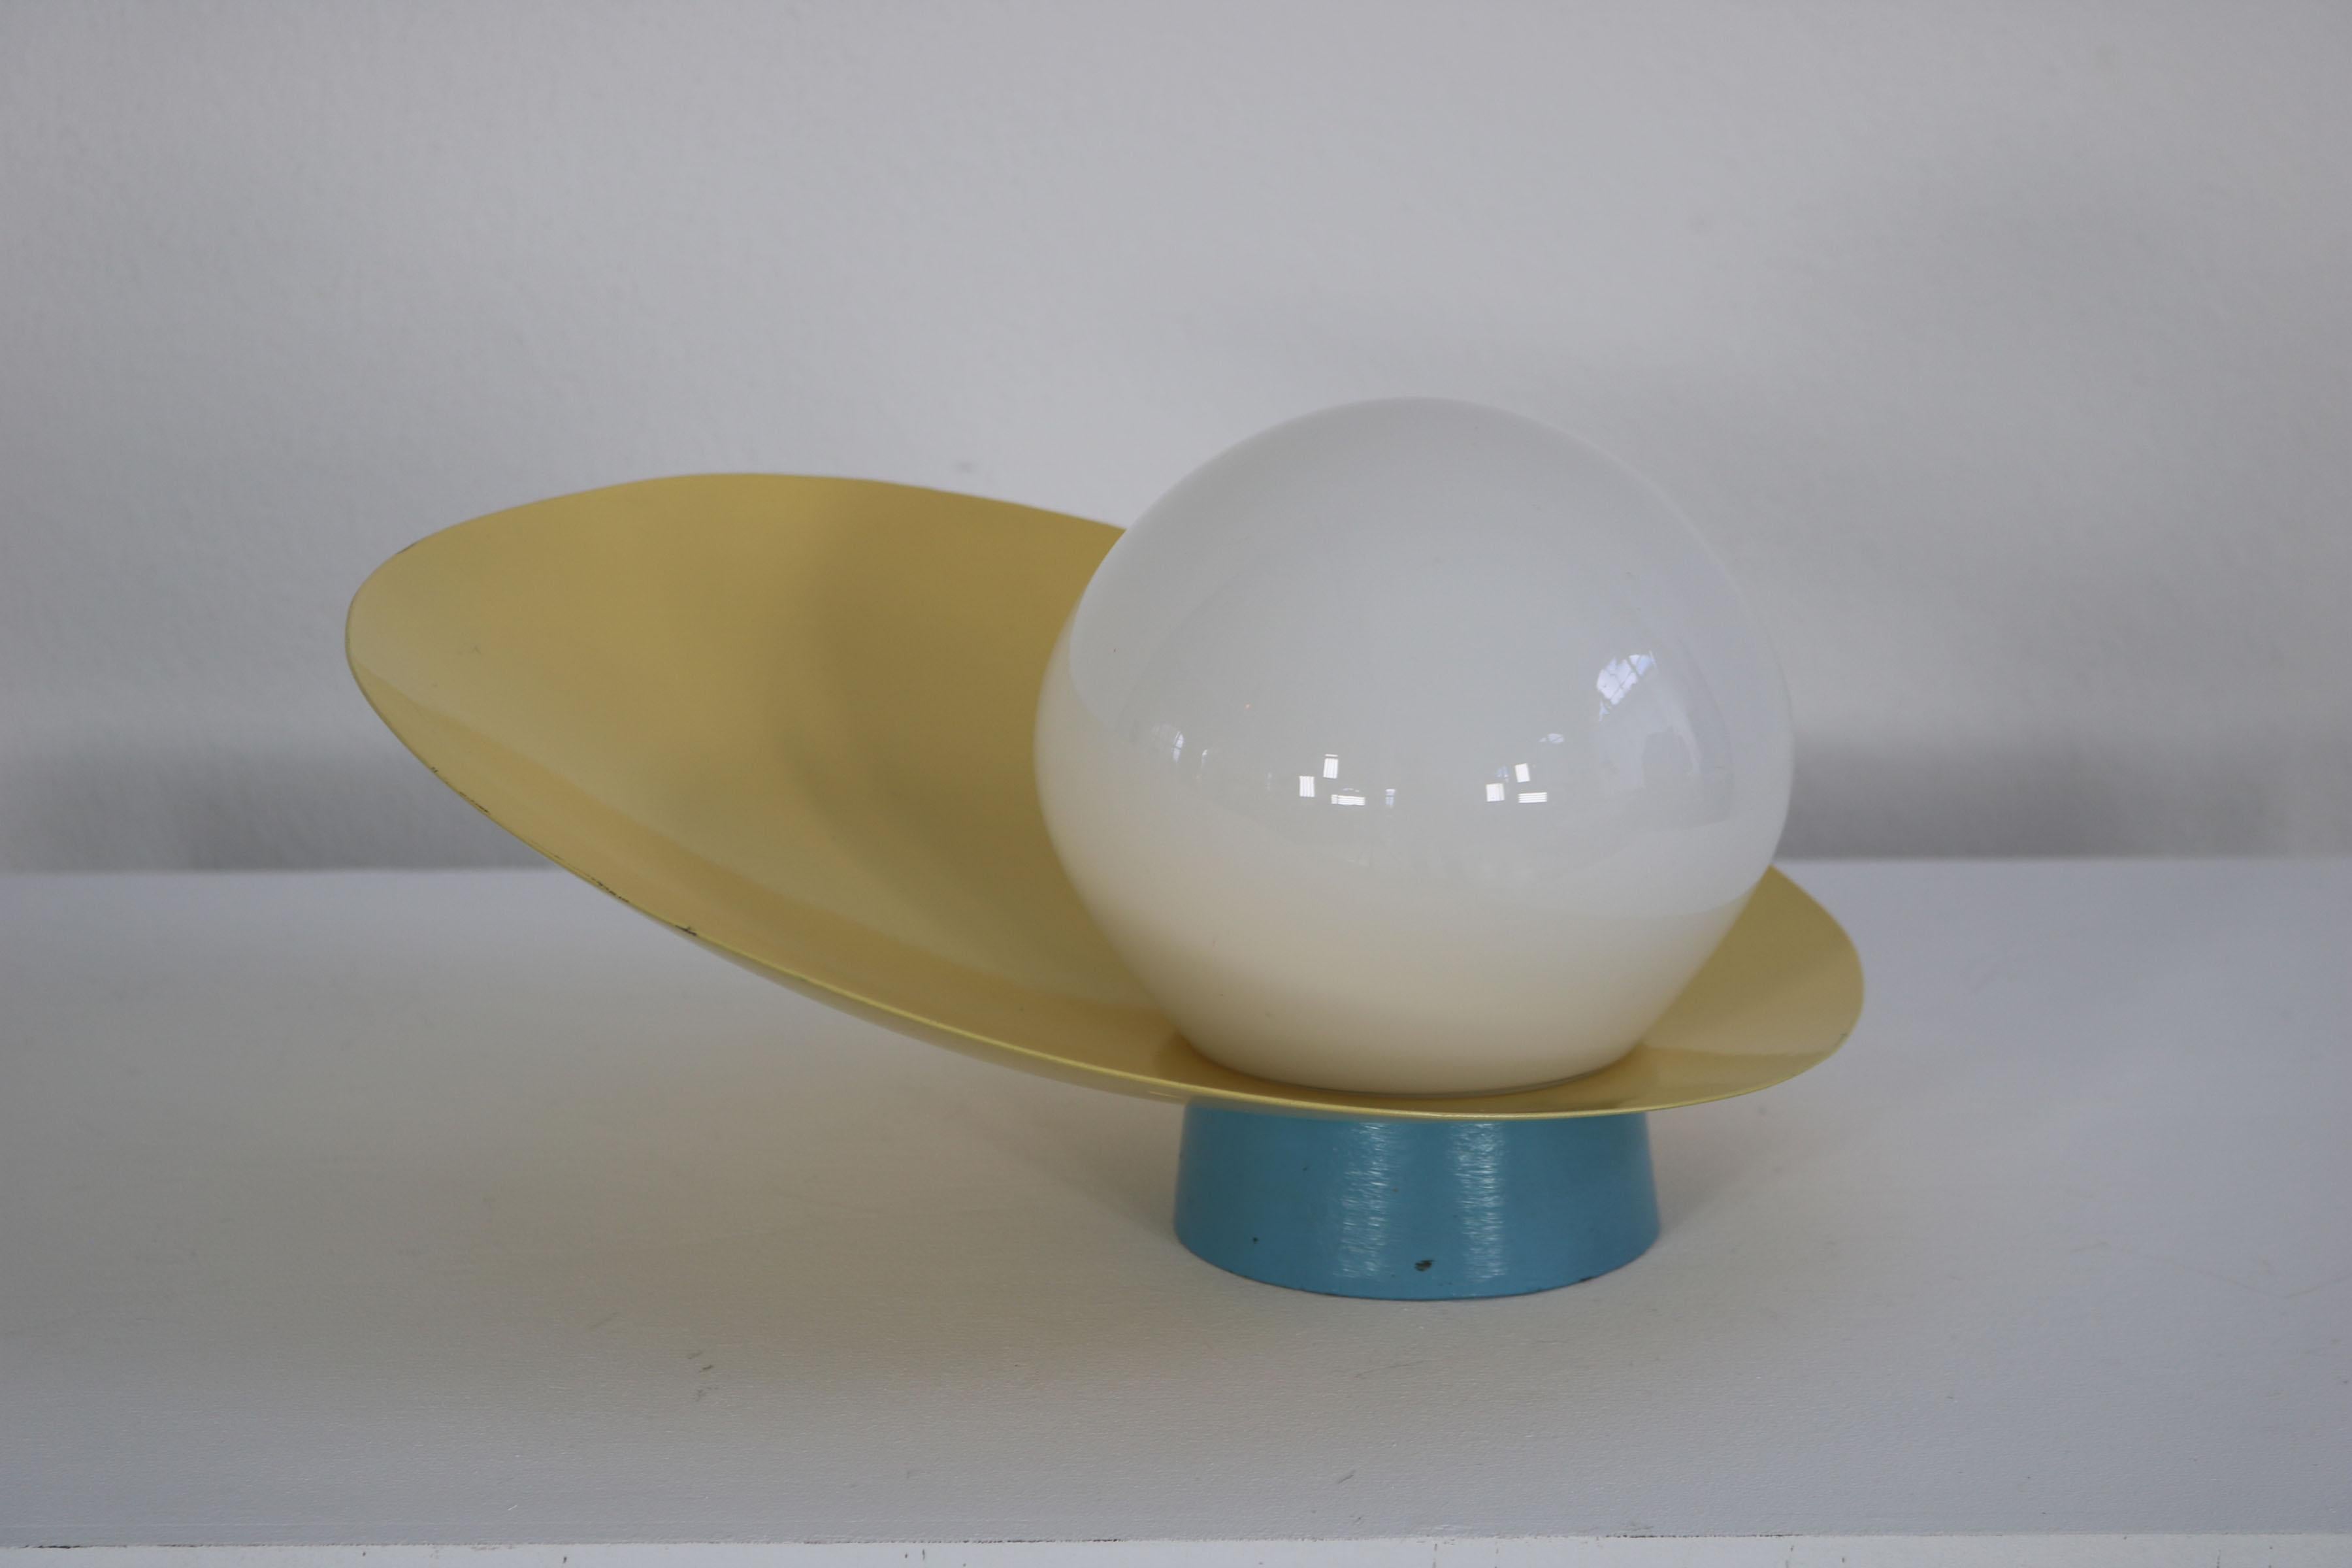 Applique décorative italienne des années 60. La base bleu clair de la lampe est une fonte qui présente de légers signes d'utilisation, en particulier sur la partie inférieure de la lampe. L'abat-jour jaune de la lampe est en aluminium et la boule de